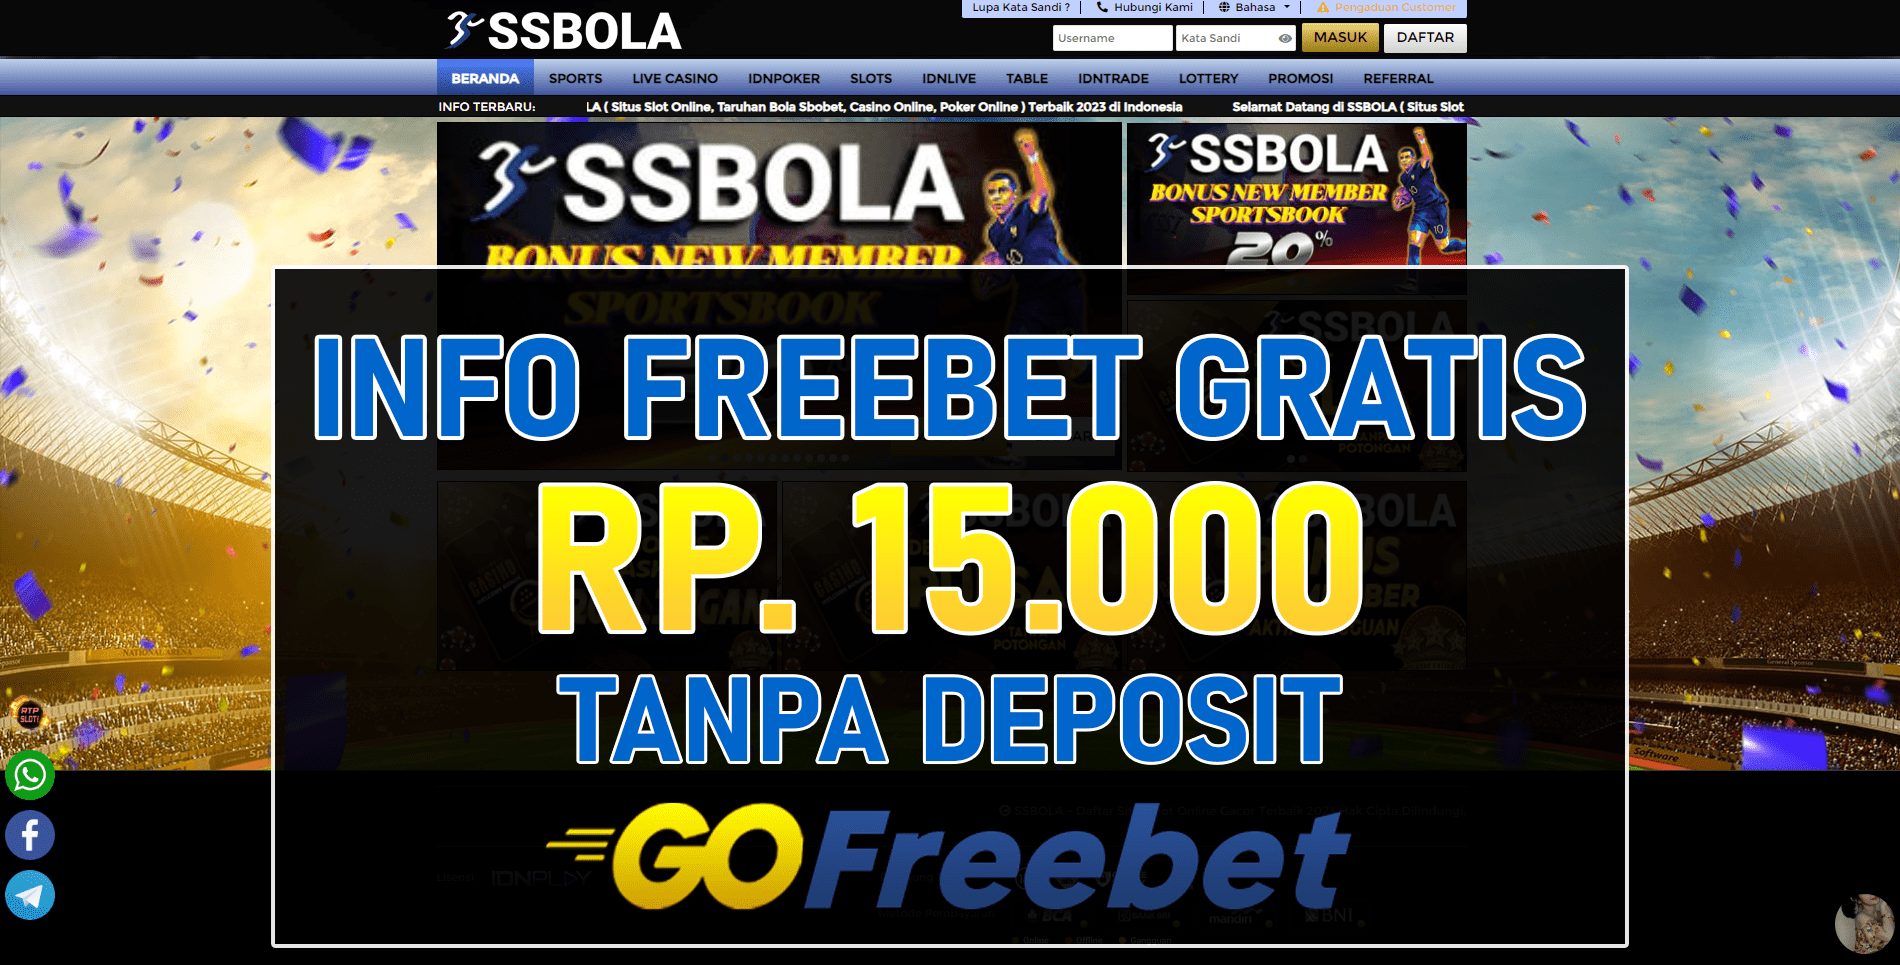 Ssbola Freebet Gratis Rp 15.000 Tanpa Deposit